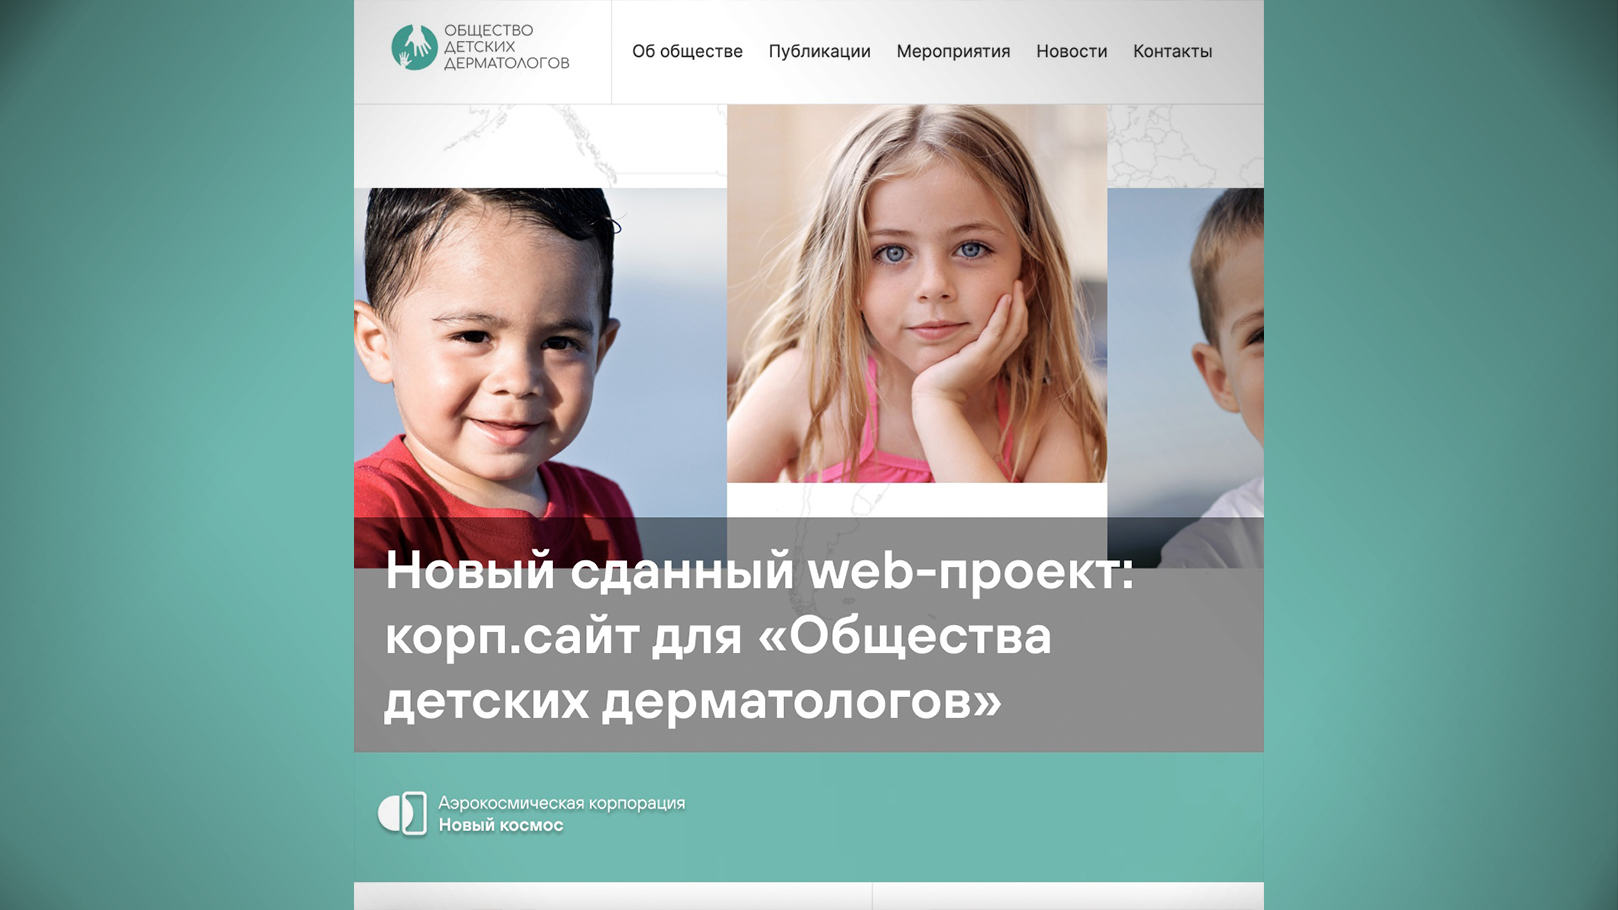 Новый сданный web-проект: корп.сайт для «Общества детских дерматологов»